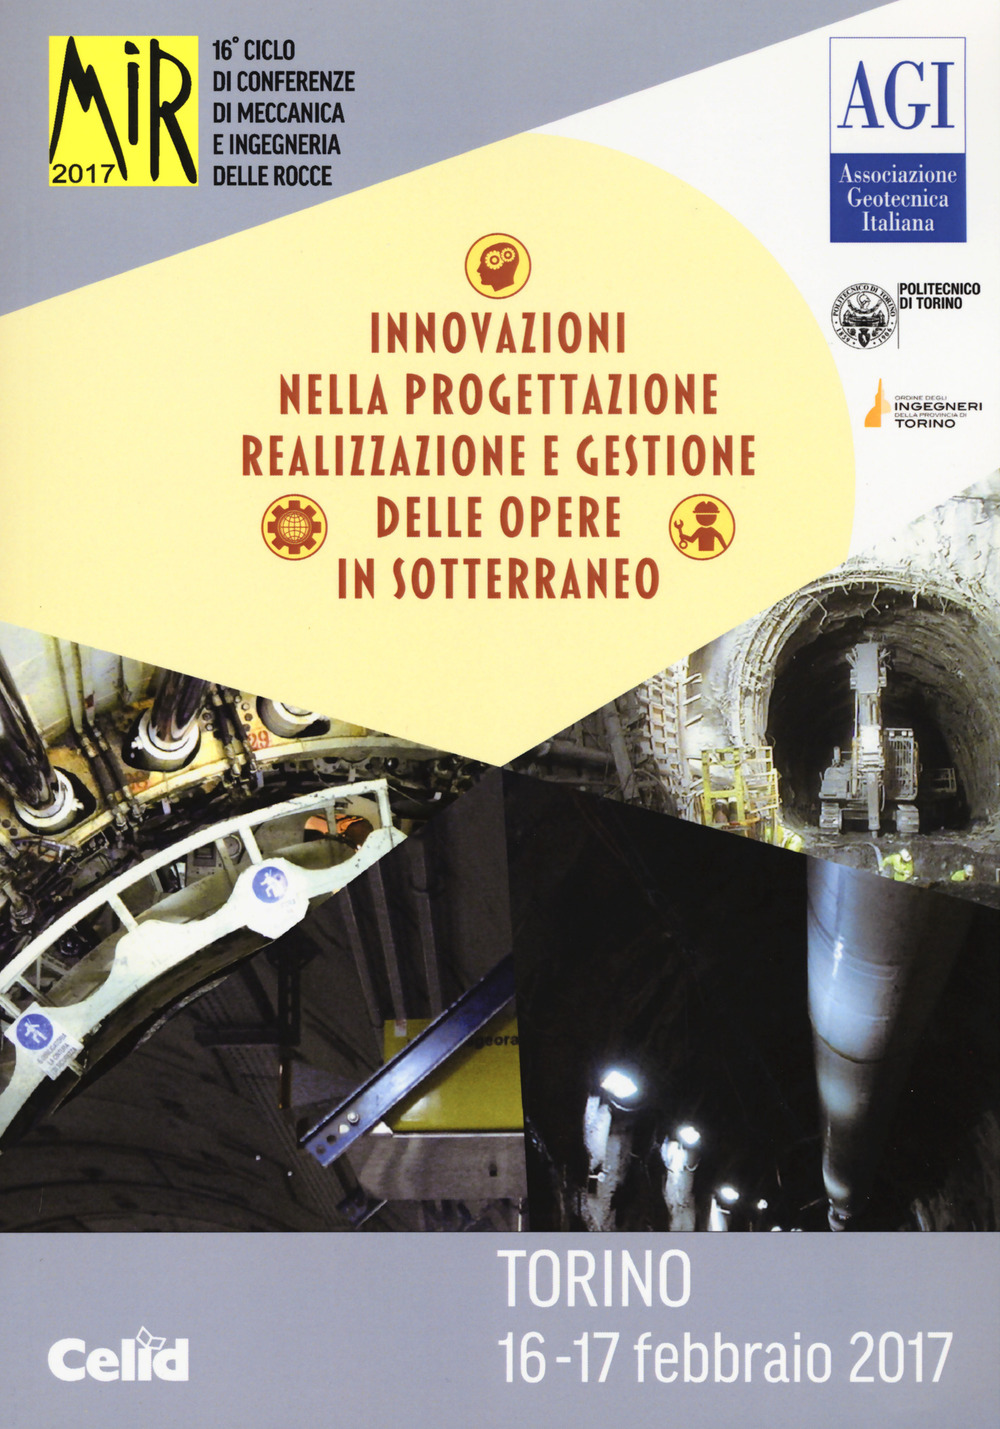 Mir 2017. Innovazioni nella progettazione e gestione delle opere in sotterraneo. 16º ciclo di conferenze di meccanica e ingegneria delle rocce (Torino, 16-17 febbraio 2017)